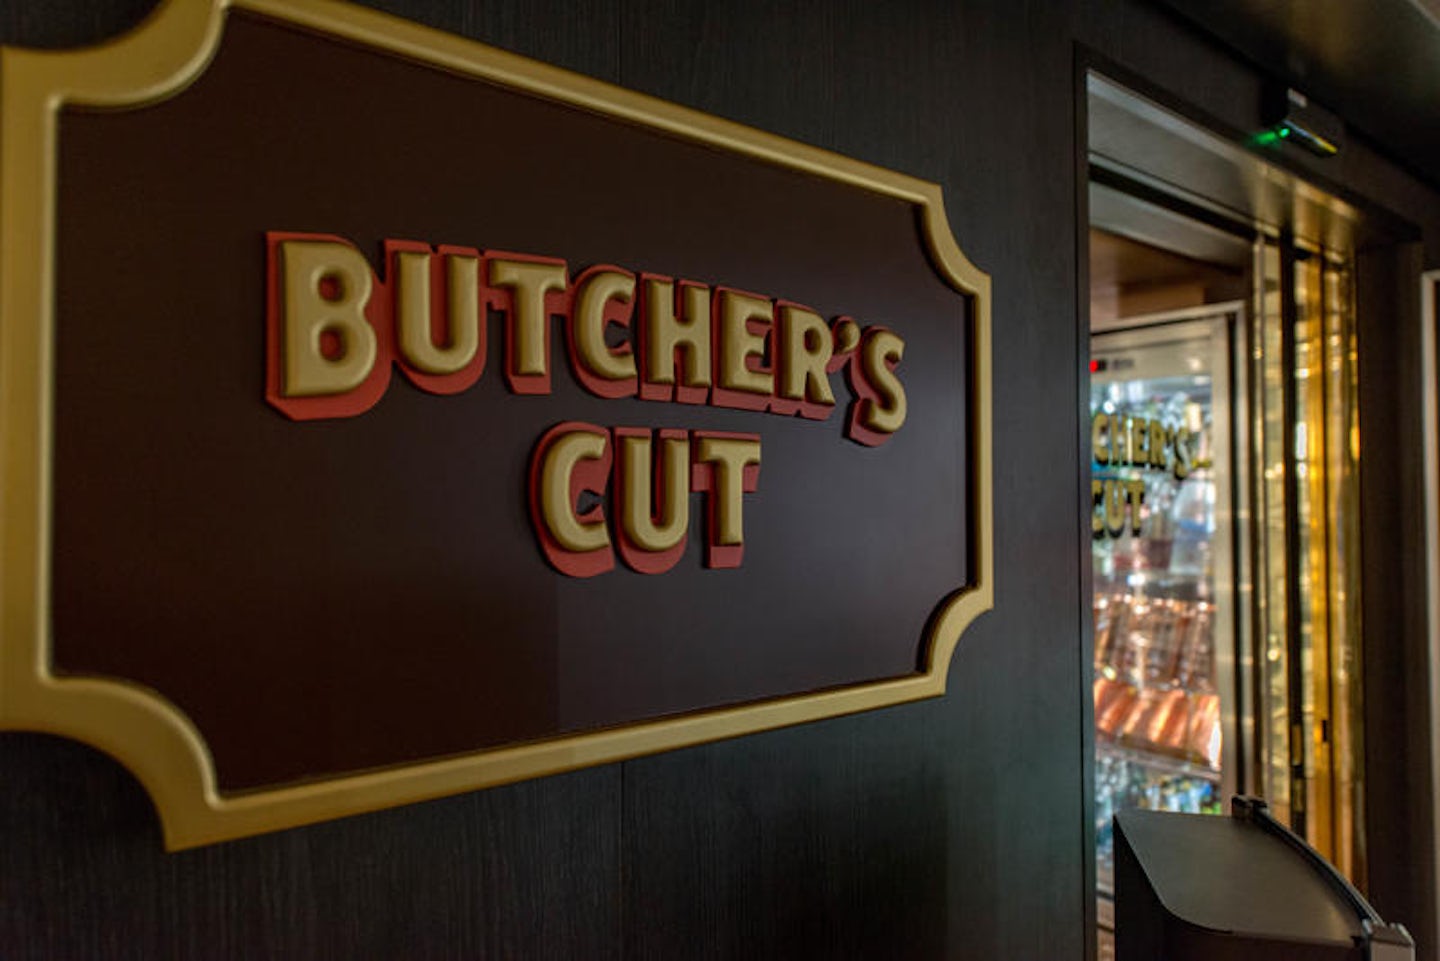 Butcher’s Cut on MSC Seaview